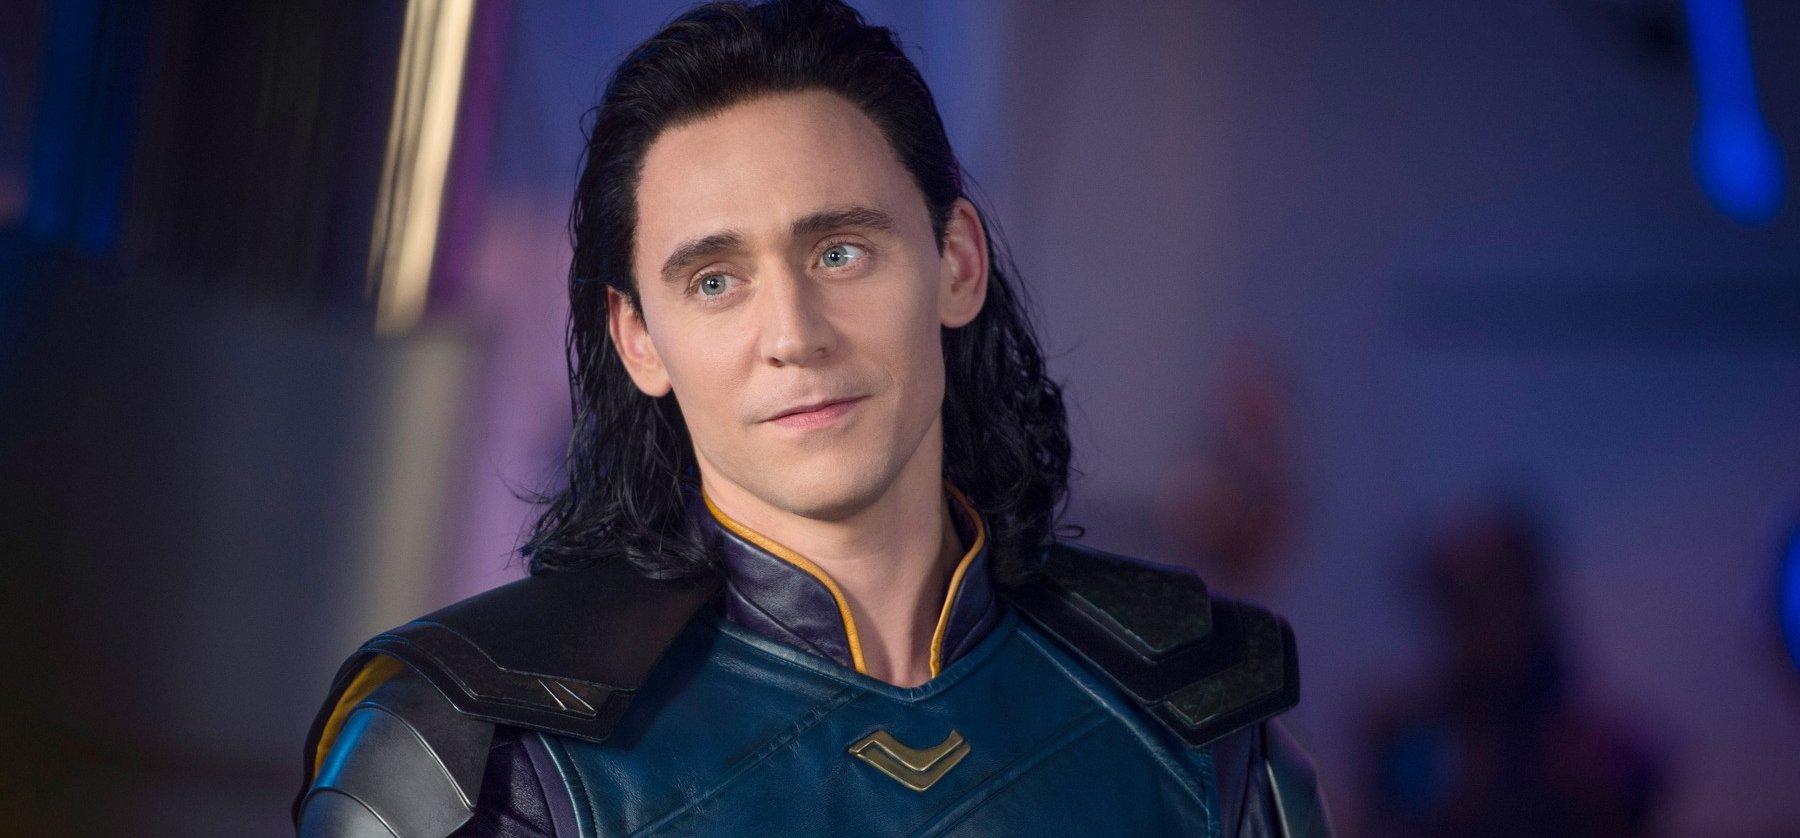 Loki teszi helyre a szétbarmolt Marvel-univerzumot? – előzetes